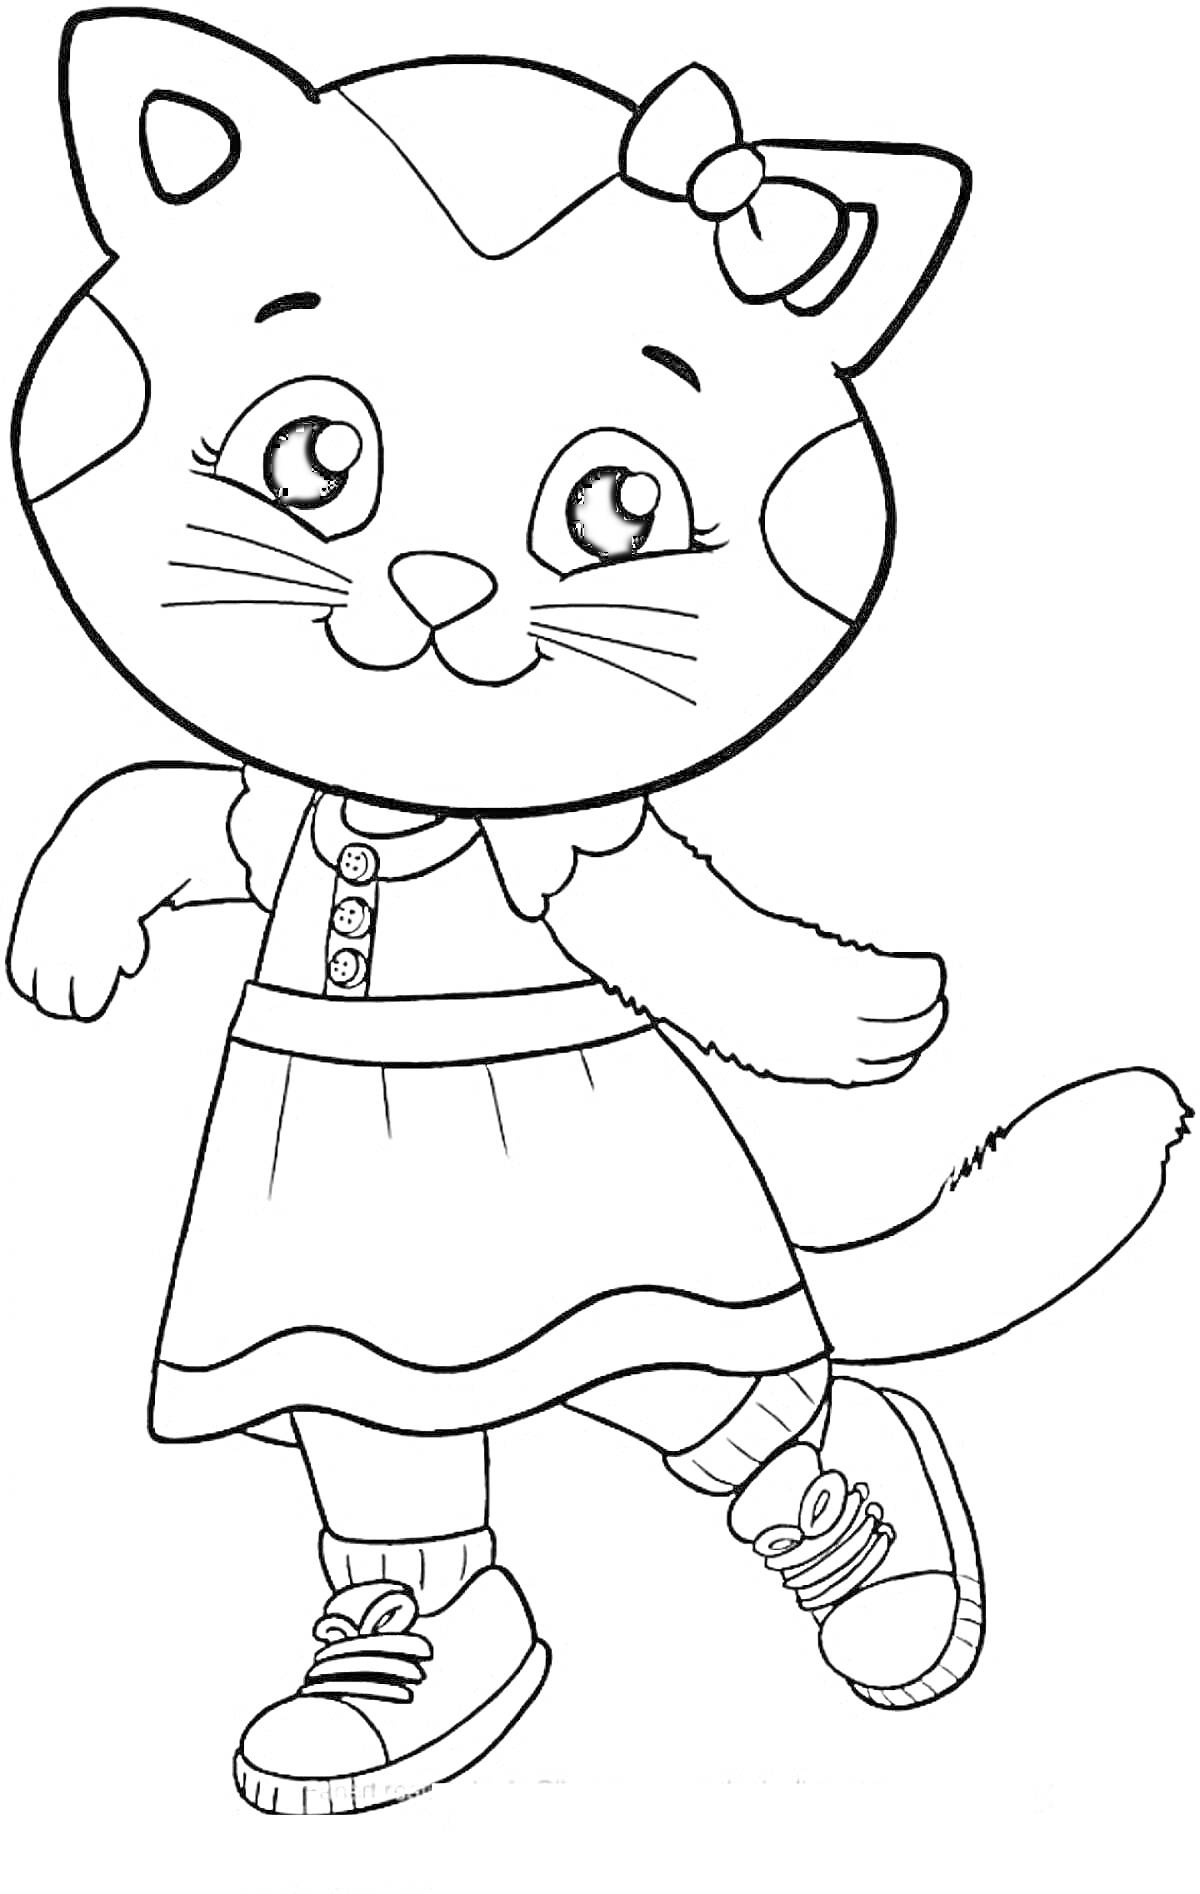 Раскраска Кошка с бантом на голове в платье и кроссовках